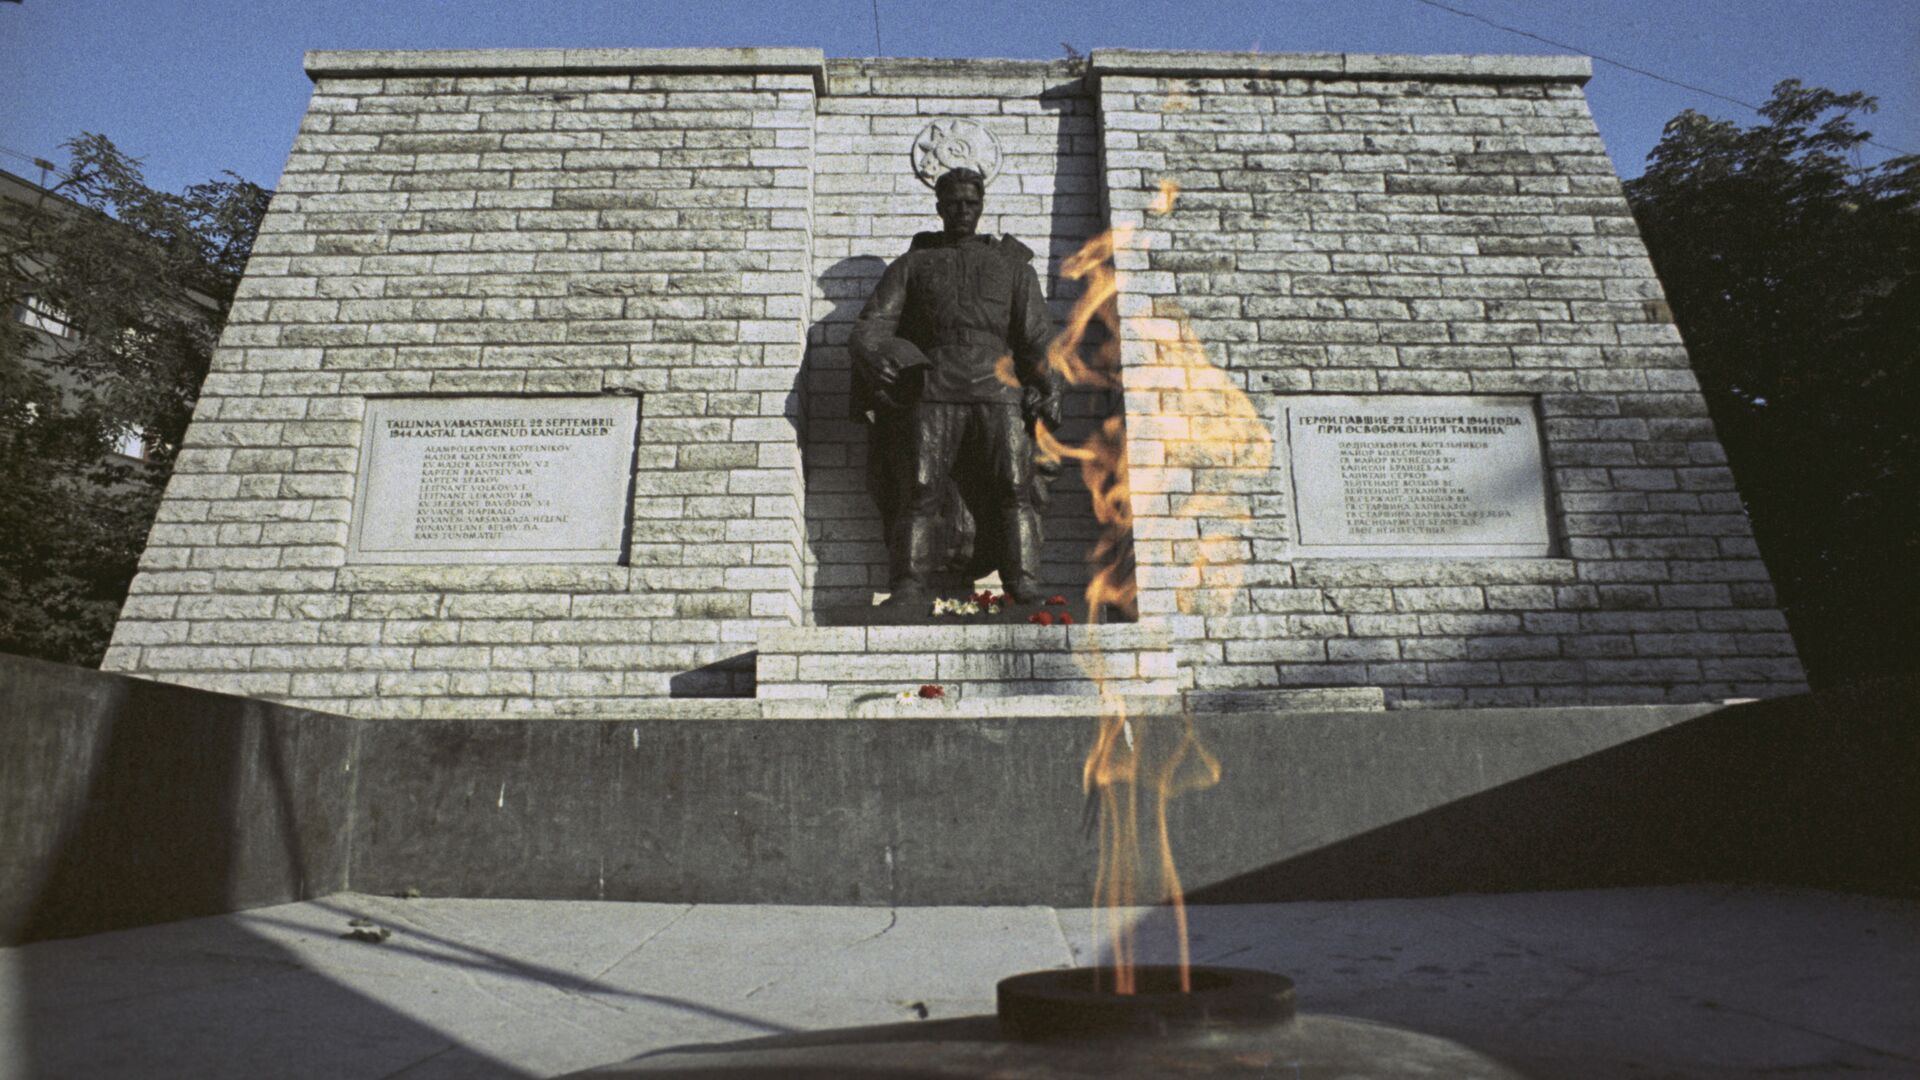 Памятник советским воинам-освободителям Таллина и вечный огонь, архивное фото - Sputnik Lietuva, 1920, 18.04.2021